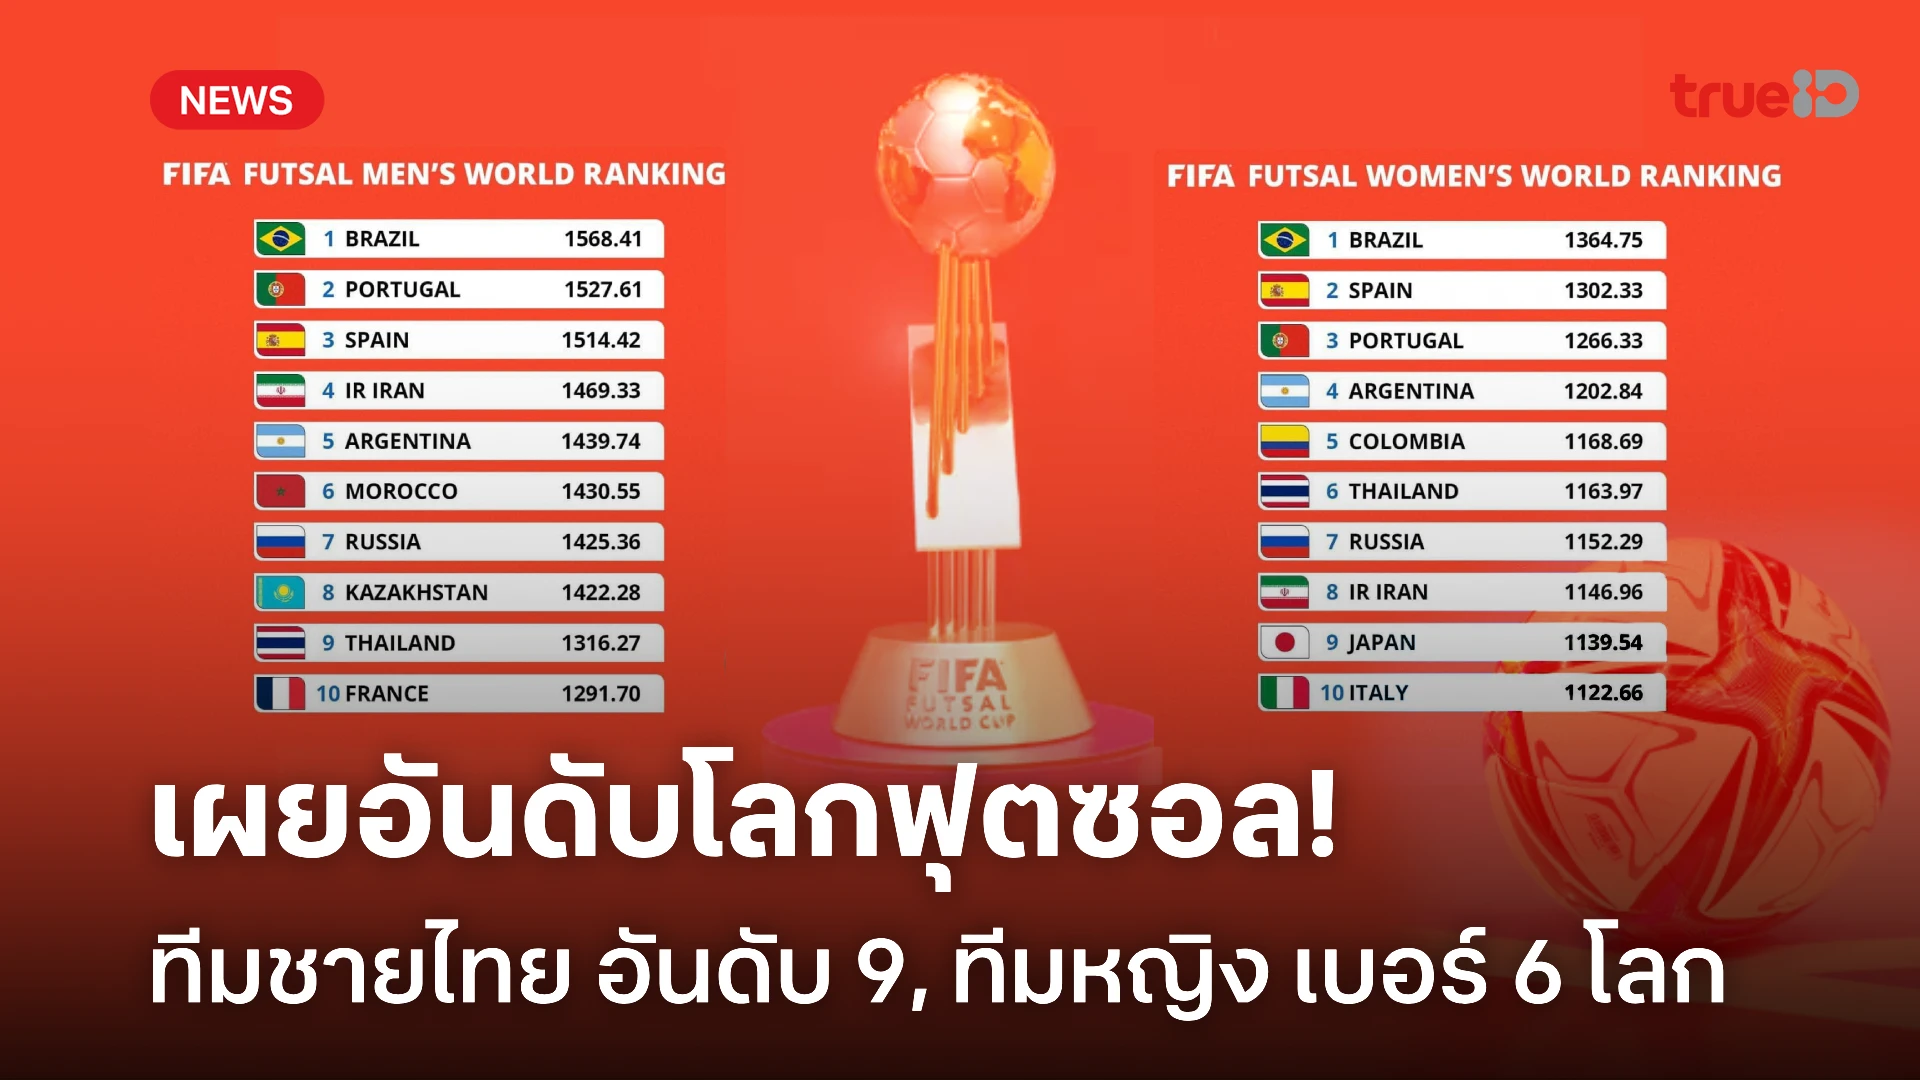 สุดปัง! ฟีฟ่า จัดอันดับ 'ฟุตซอลไทย' รั้งอันดับ 9 ของโลก - ที่ 2 เอเชีย